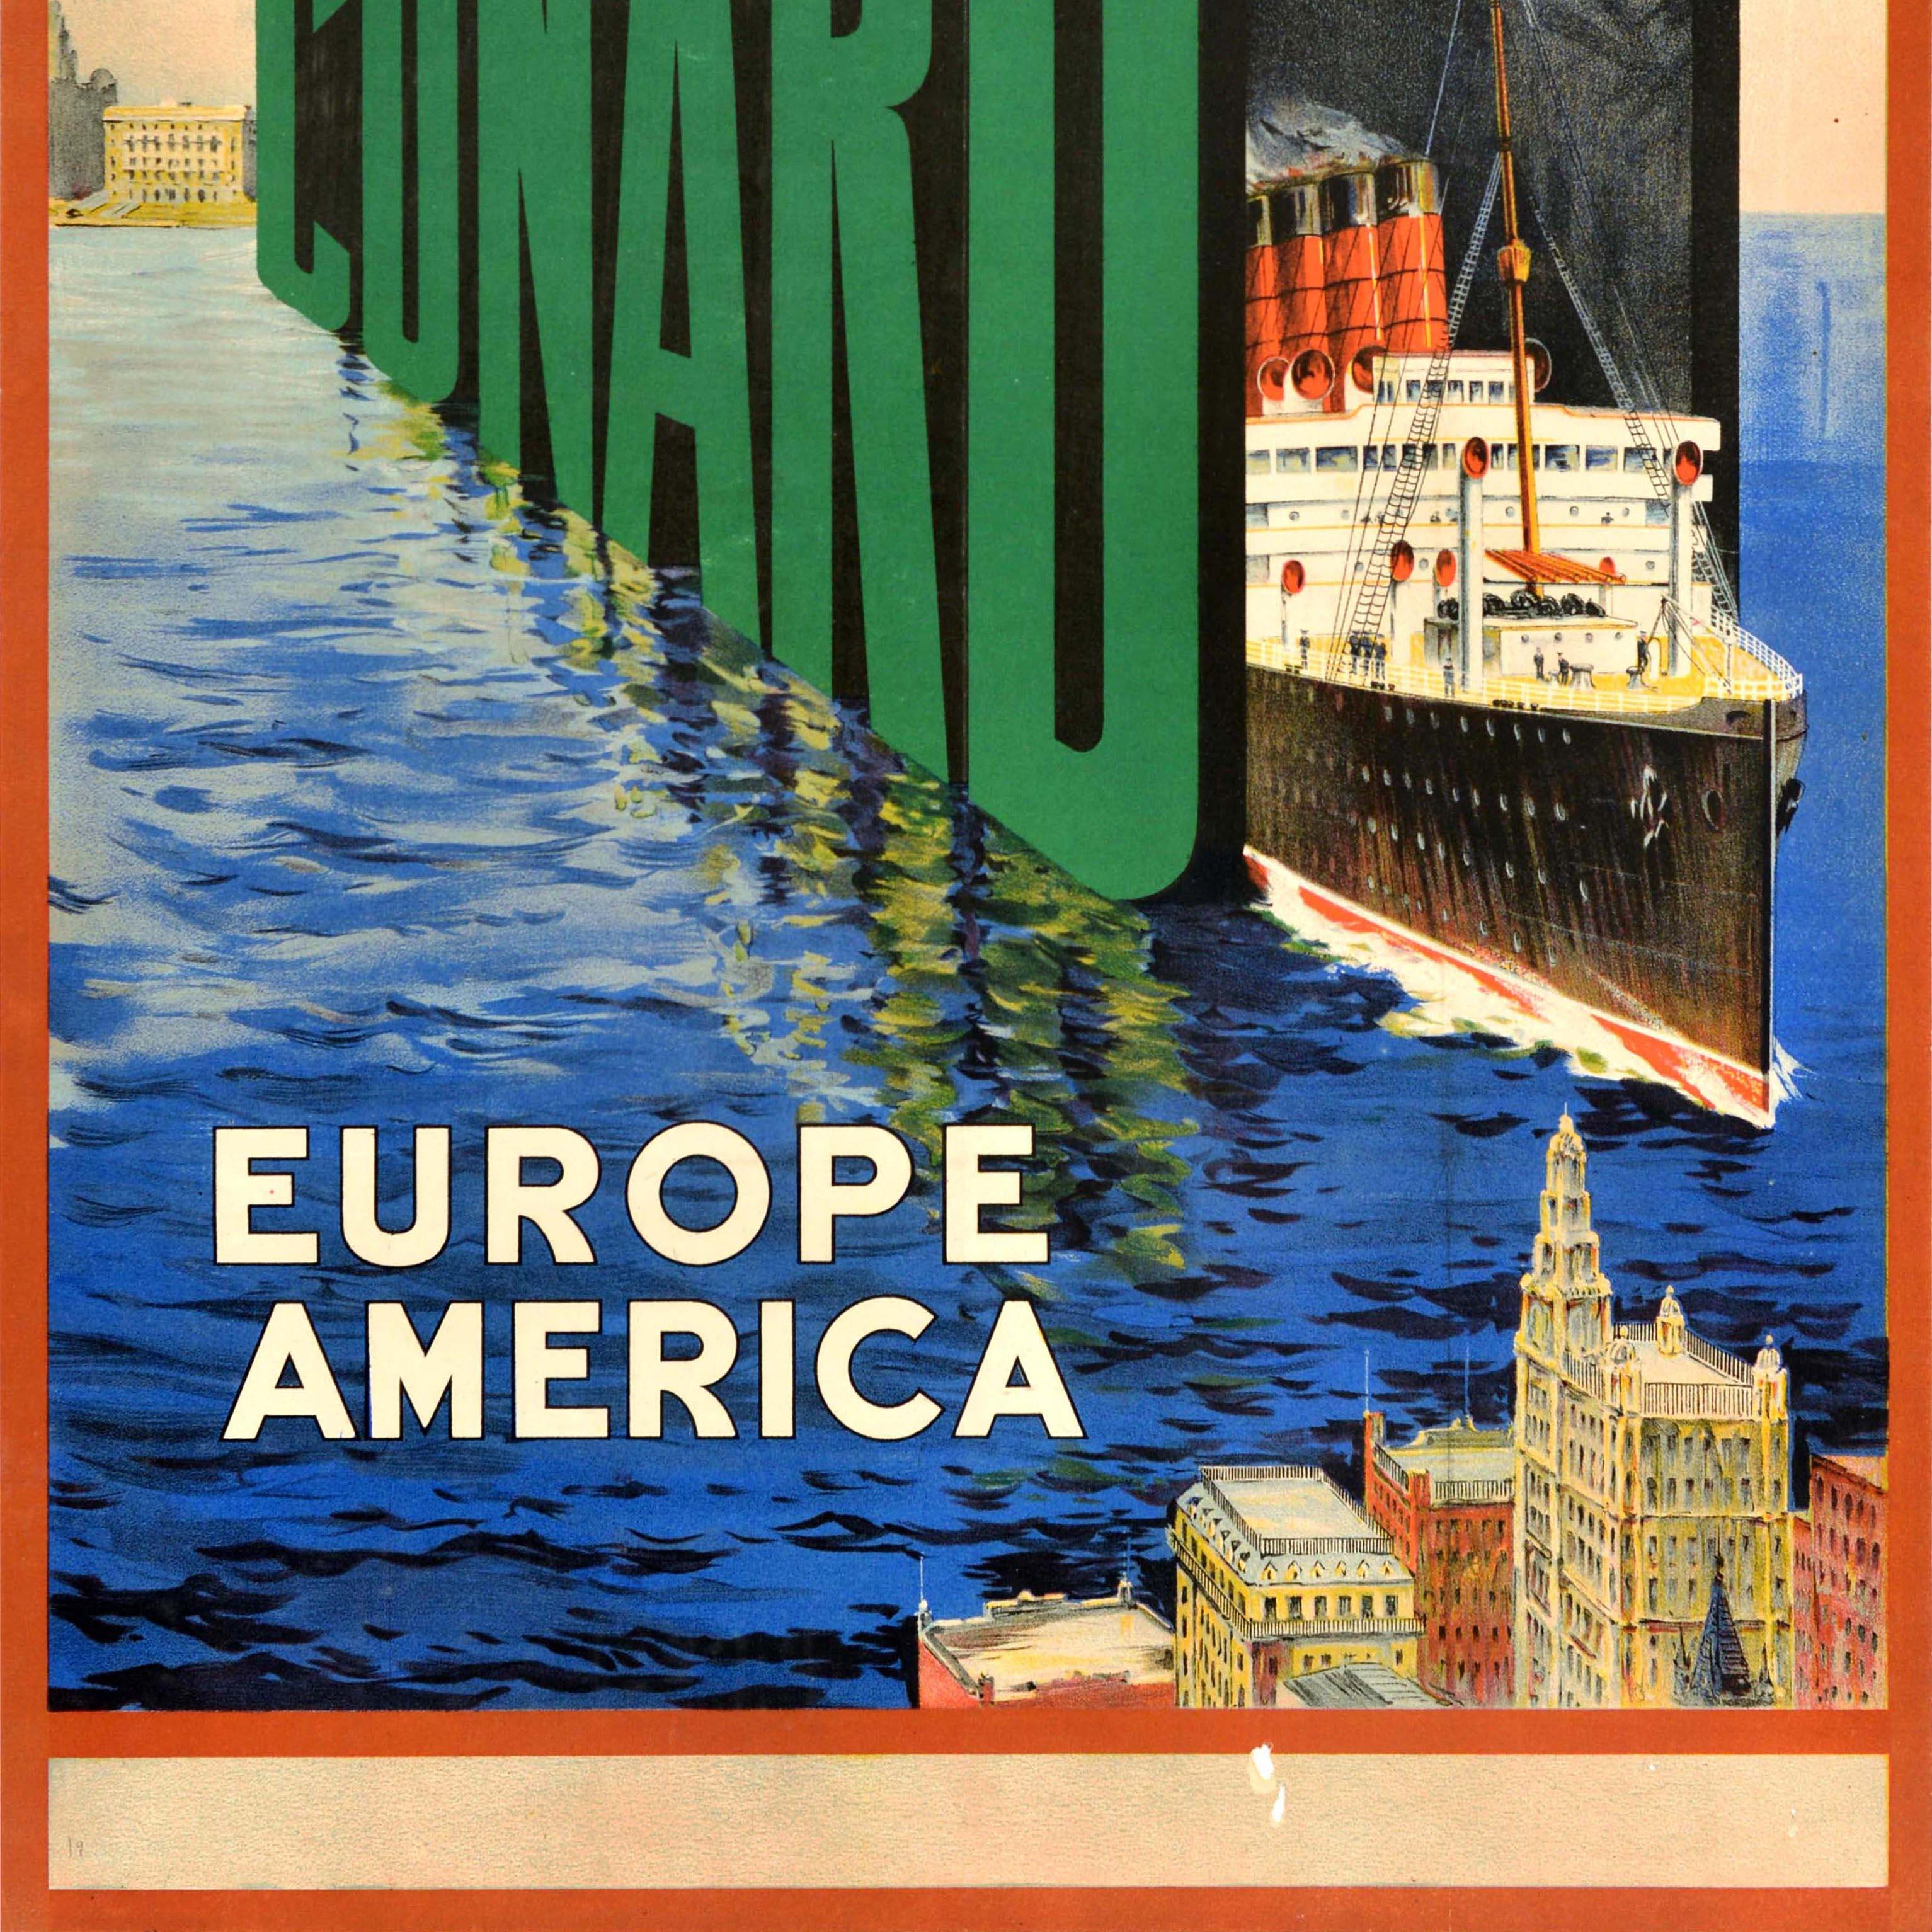 Original Vintage Kreuzfahrt Plakat Werbung Cunard The Connecting Link Europa Amerika mit einem großen Design zeigt eine Cunard Line Ozeandampfer Segeln aus den großen grünen und schwarzen Buchstaben über das Meer zwischen Europa als ein historisches